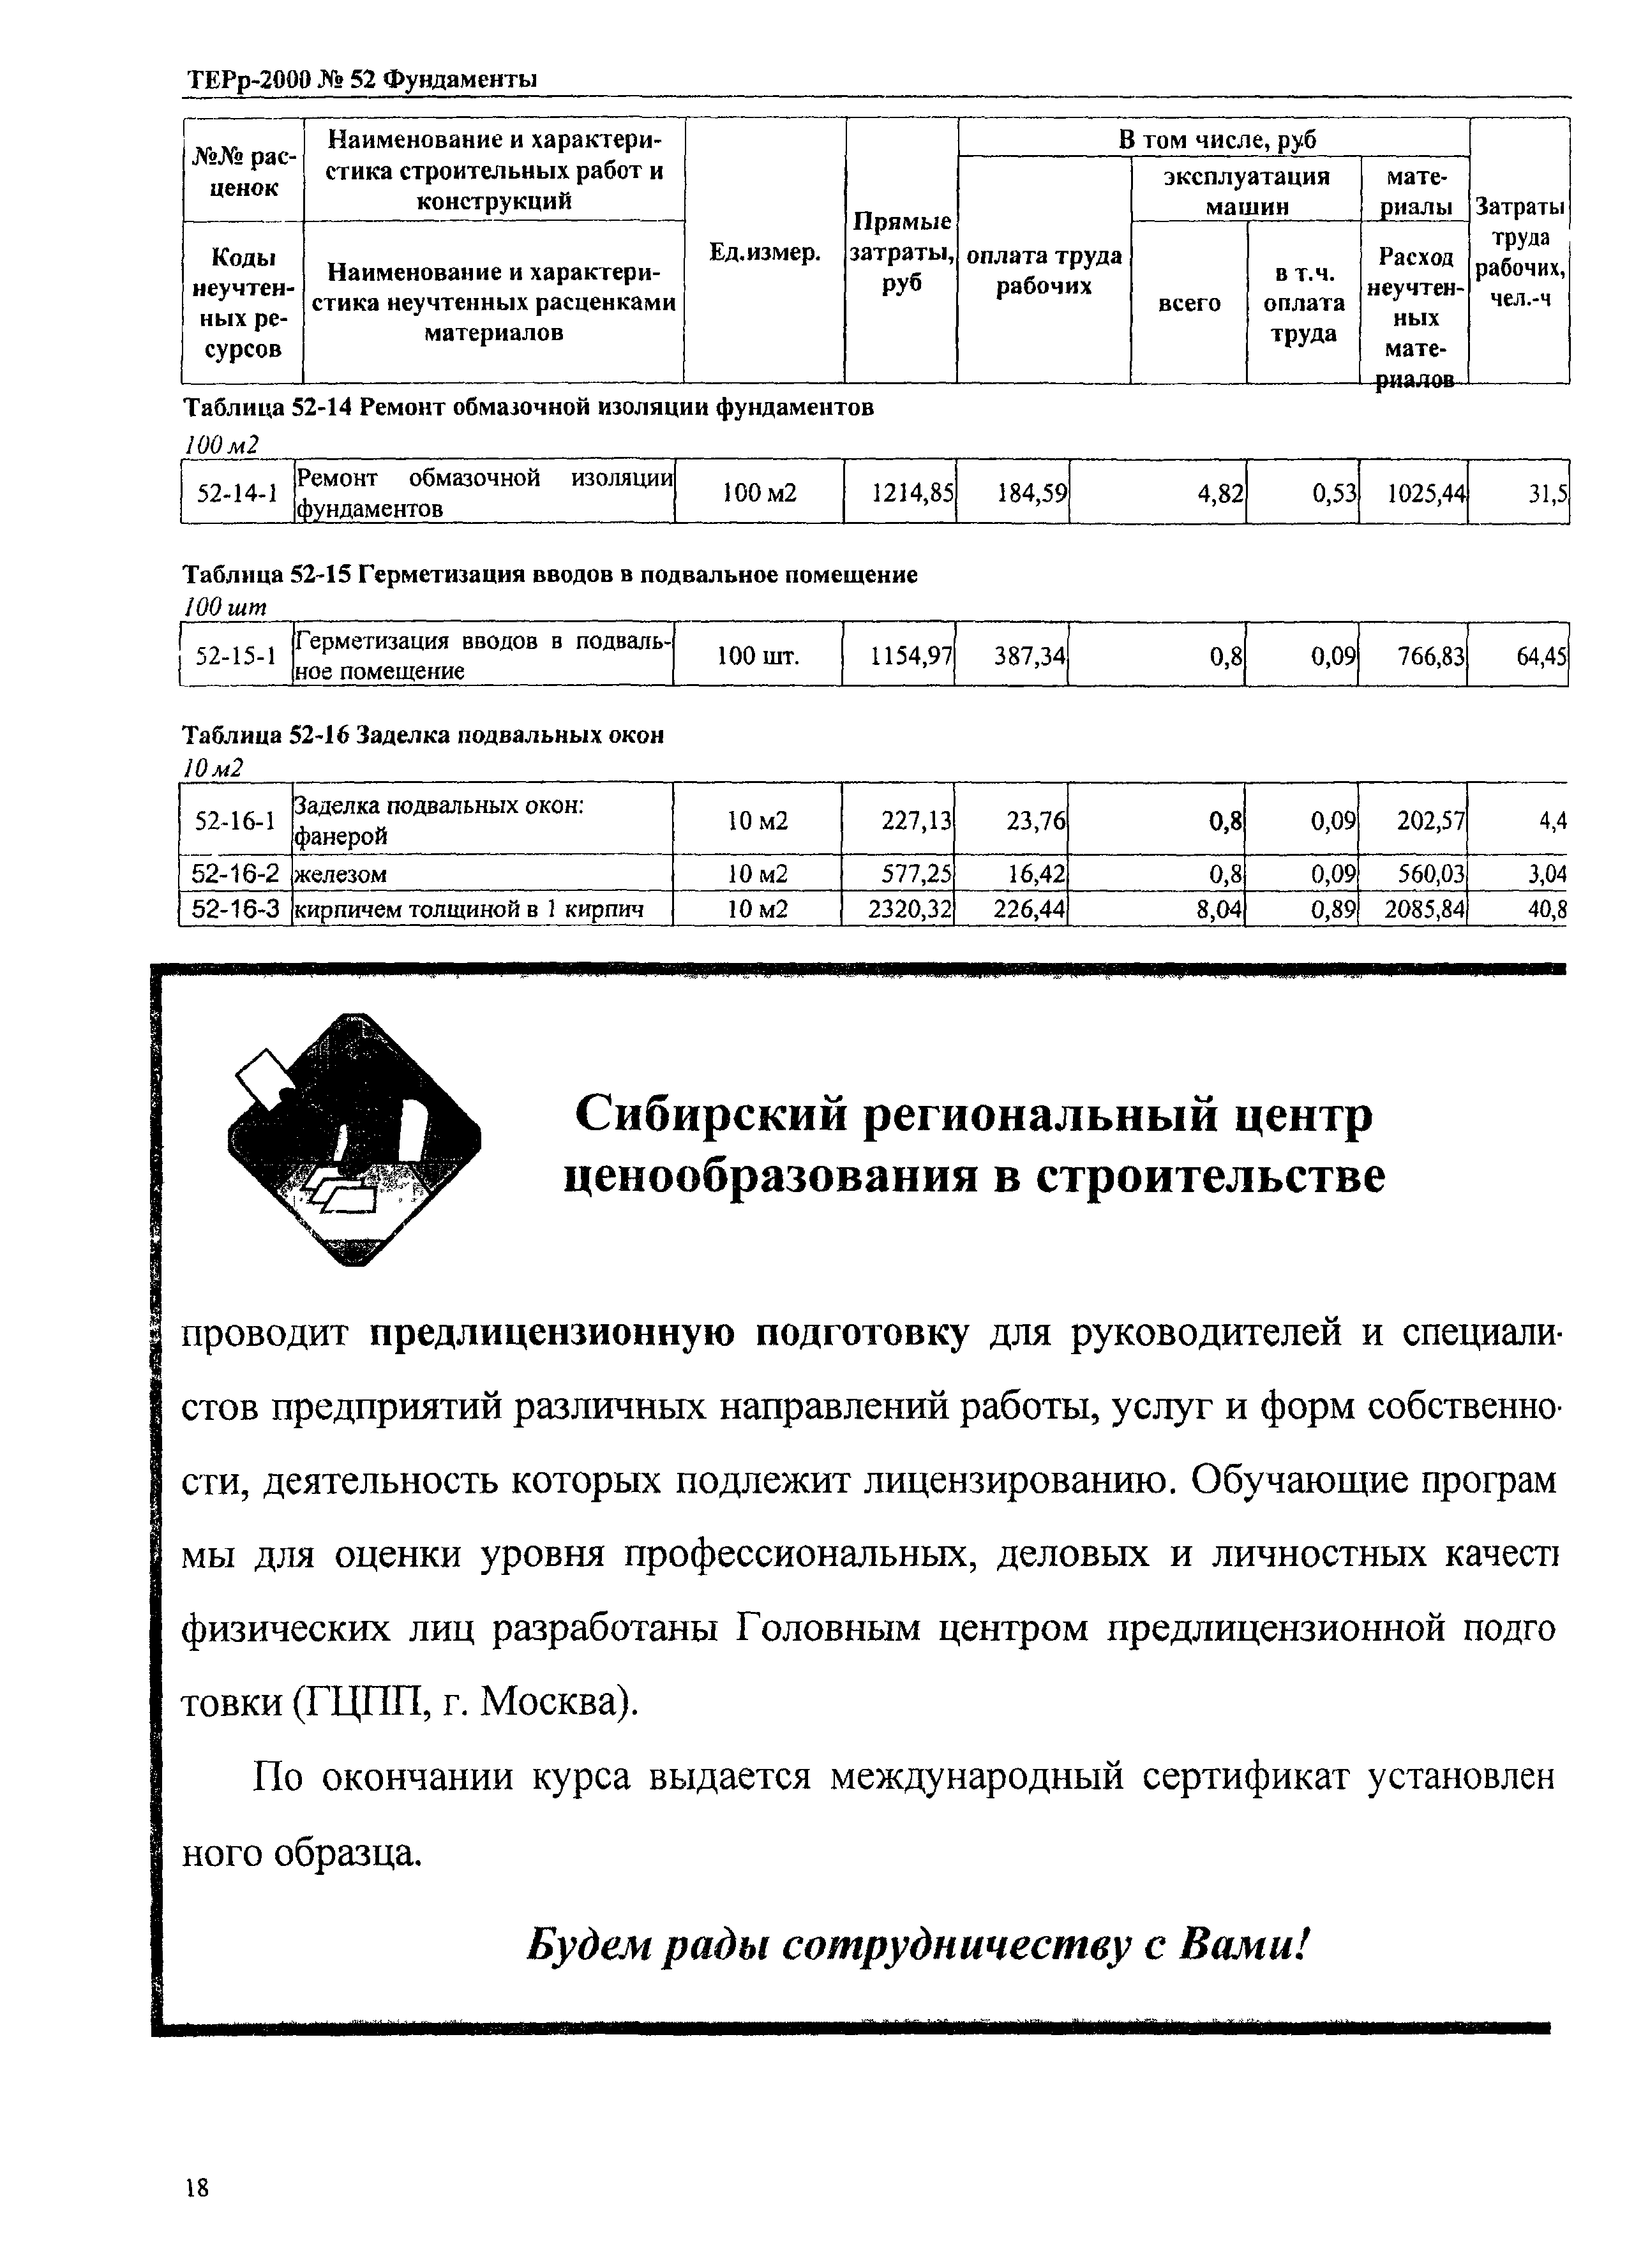 ТЕРр Омская область 2000-52